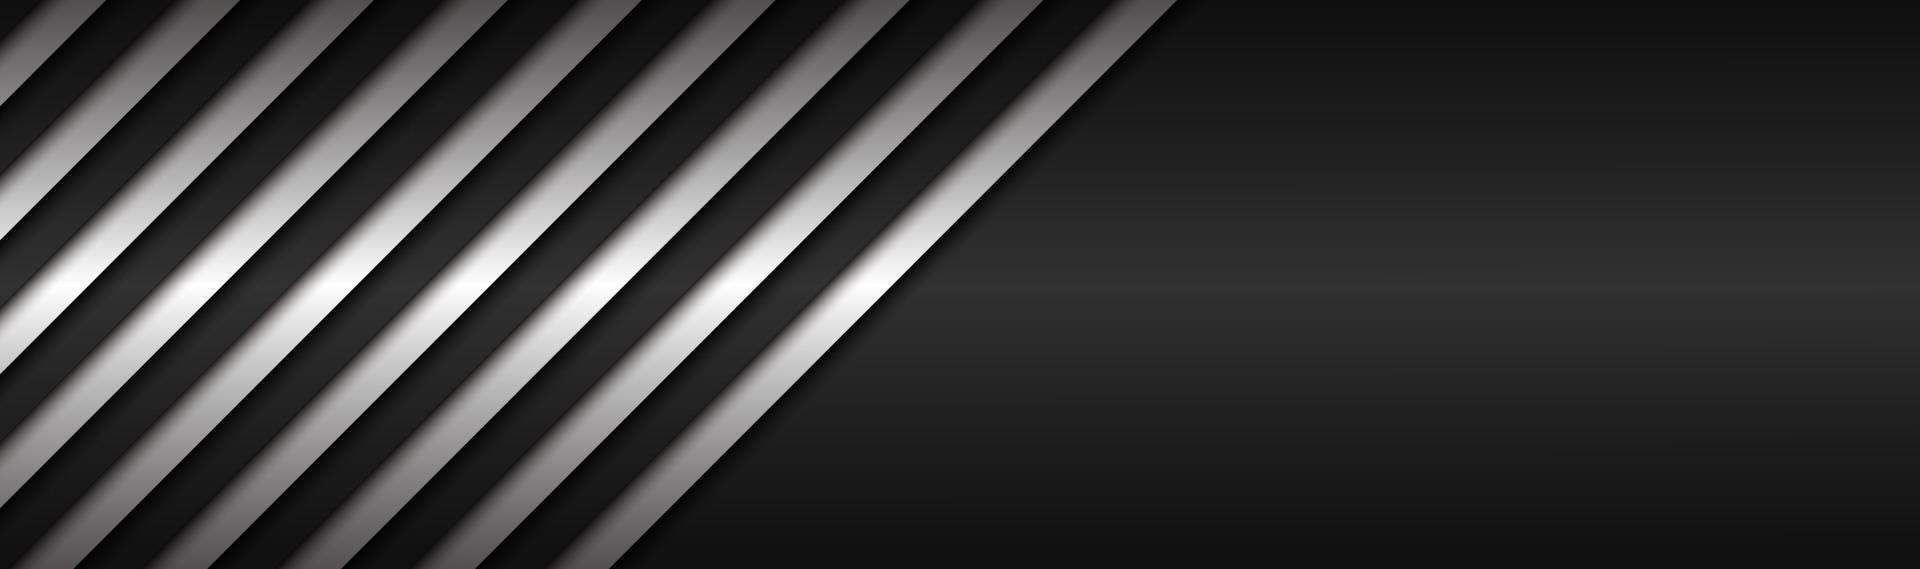 zwart-wit abstracte metalen vectorkop met schuine lijnen zwart-wit gestreept patroon parallelle lijnen en stroken vector abstracte breedbeeldachtergrond